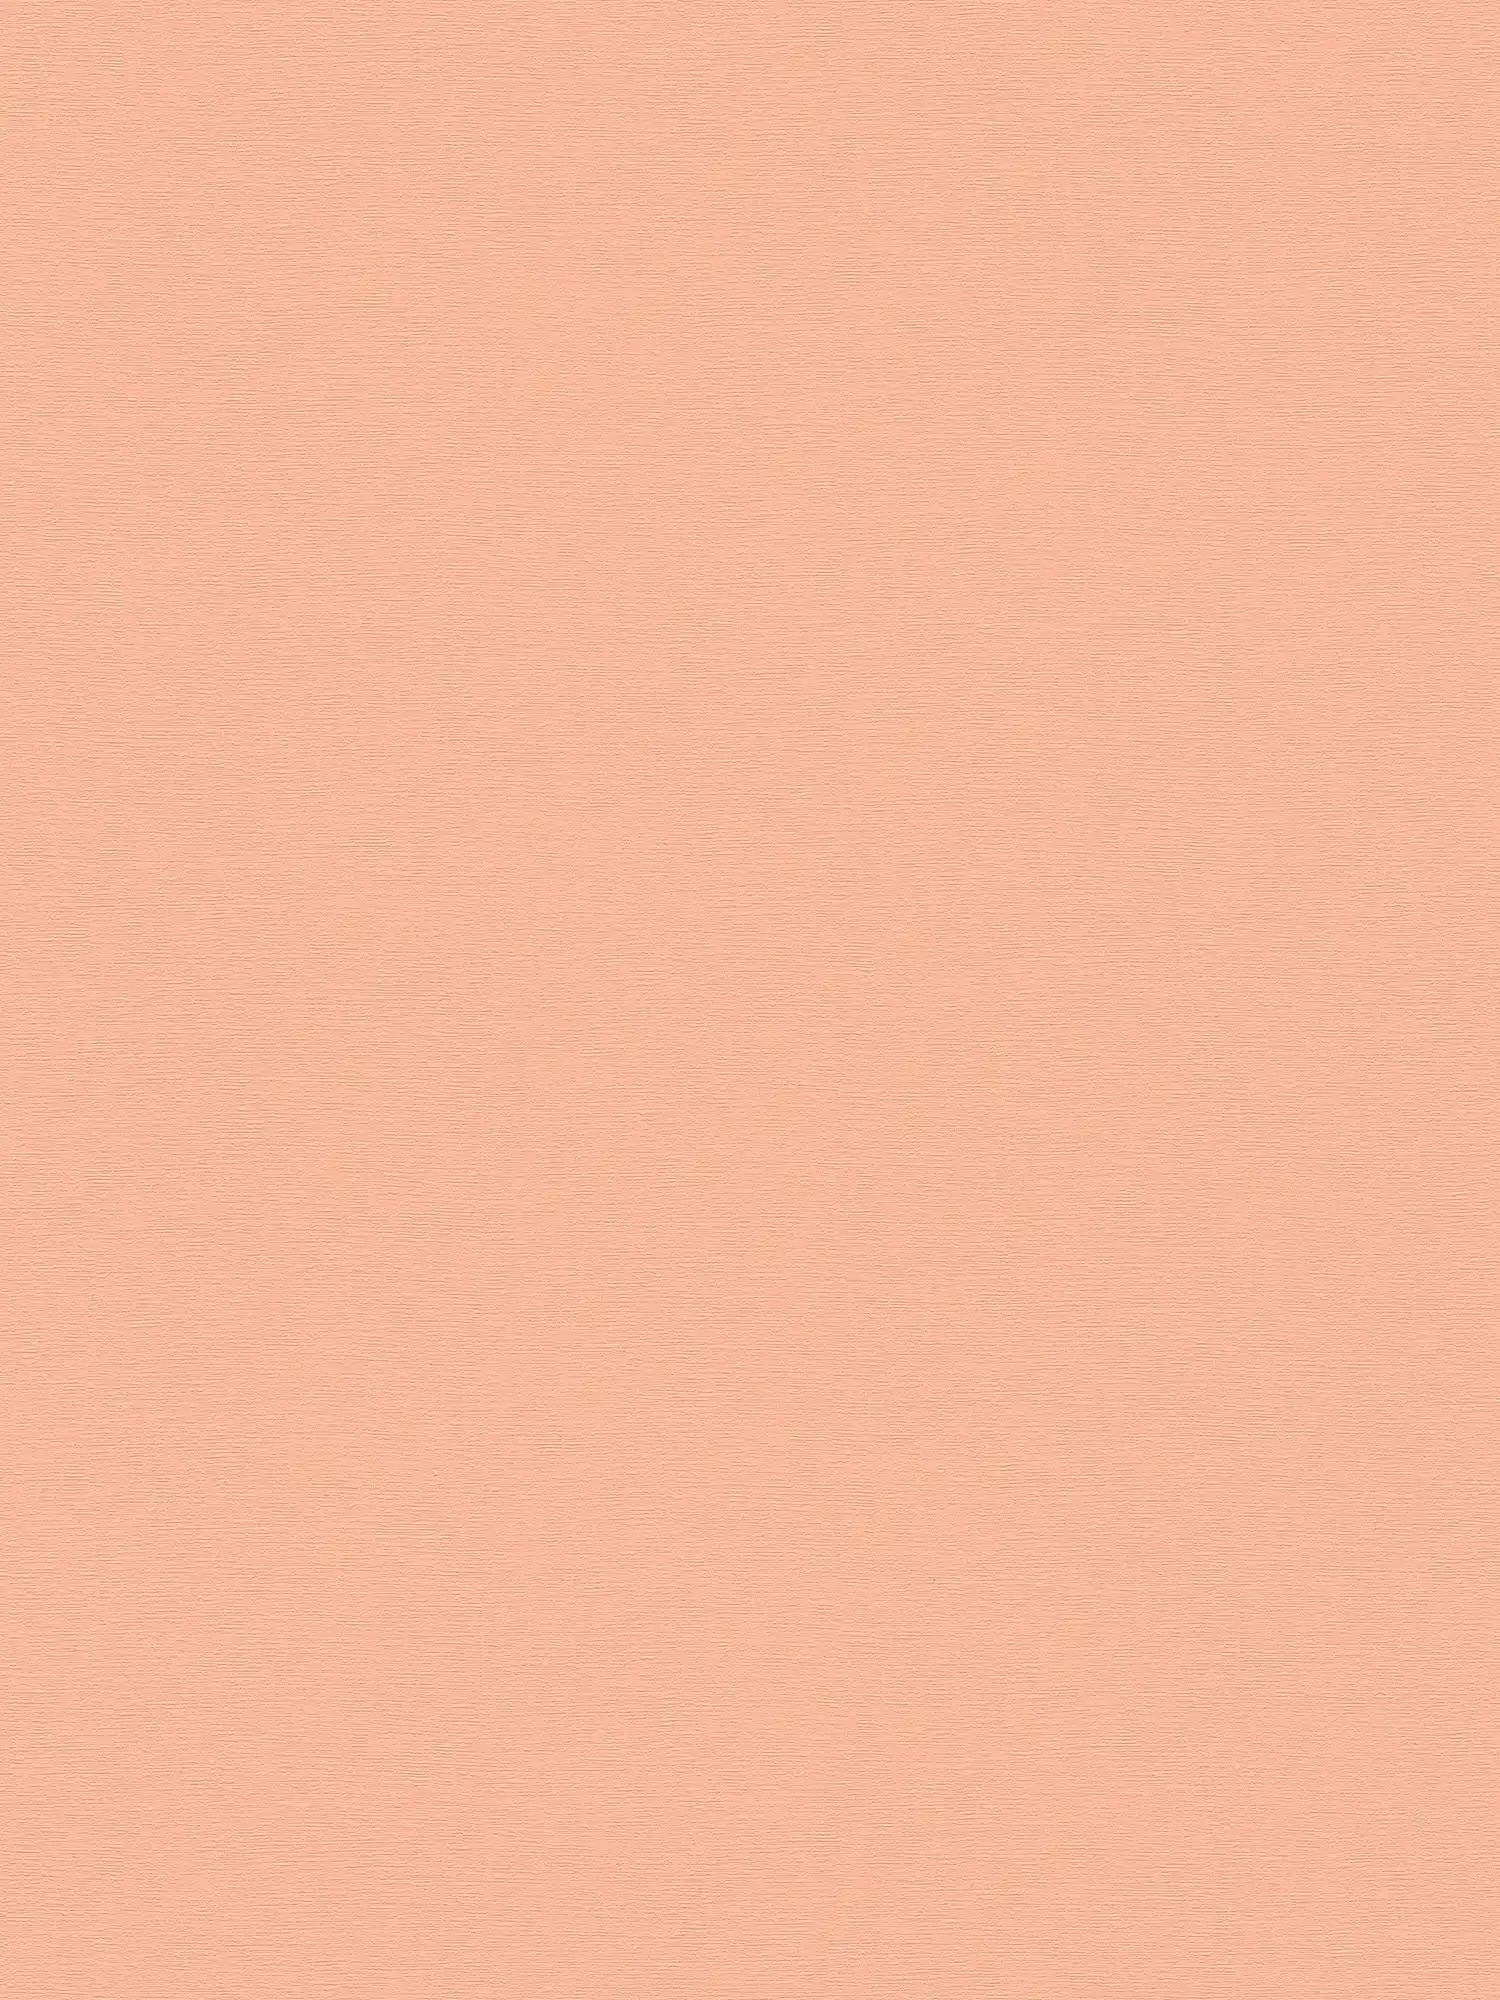         Effen vliesbehang met een zachte textuur - Roze
    